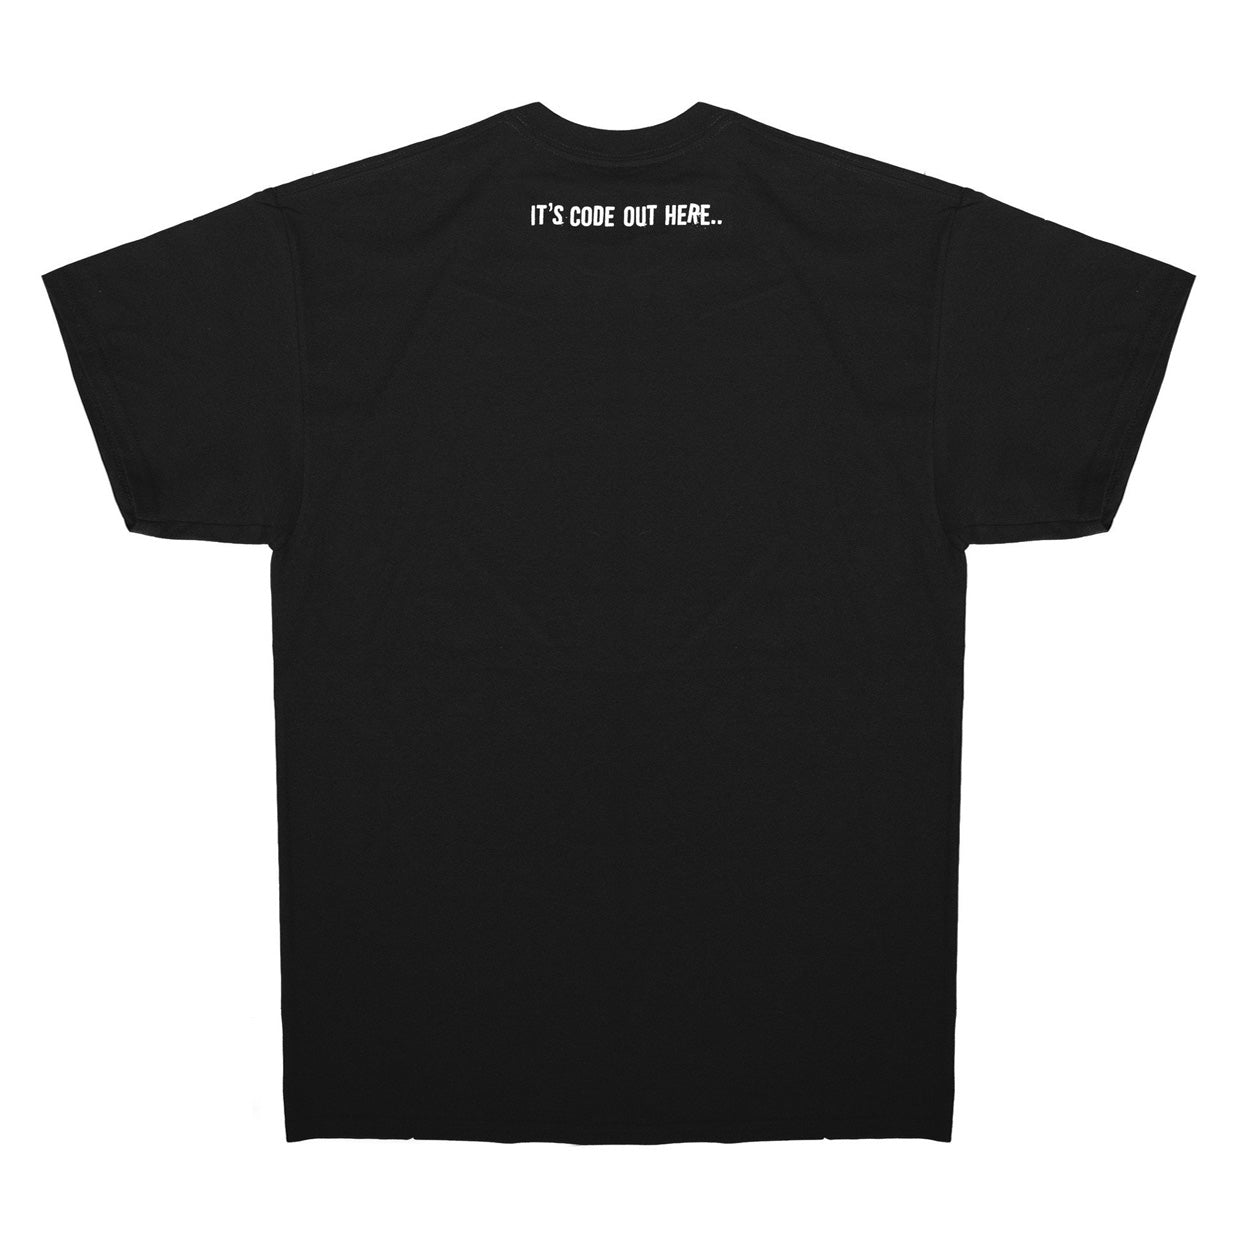 0115 Records - T-Shirts - 0115 x The Tribes T-shirt (Black)